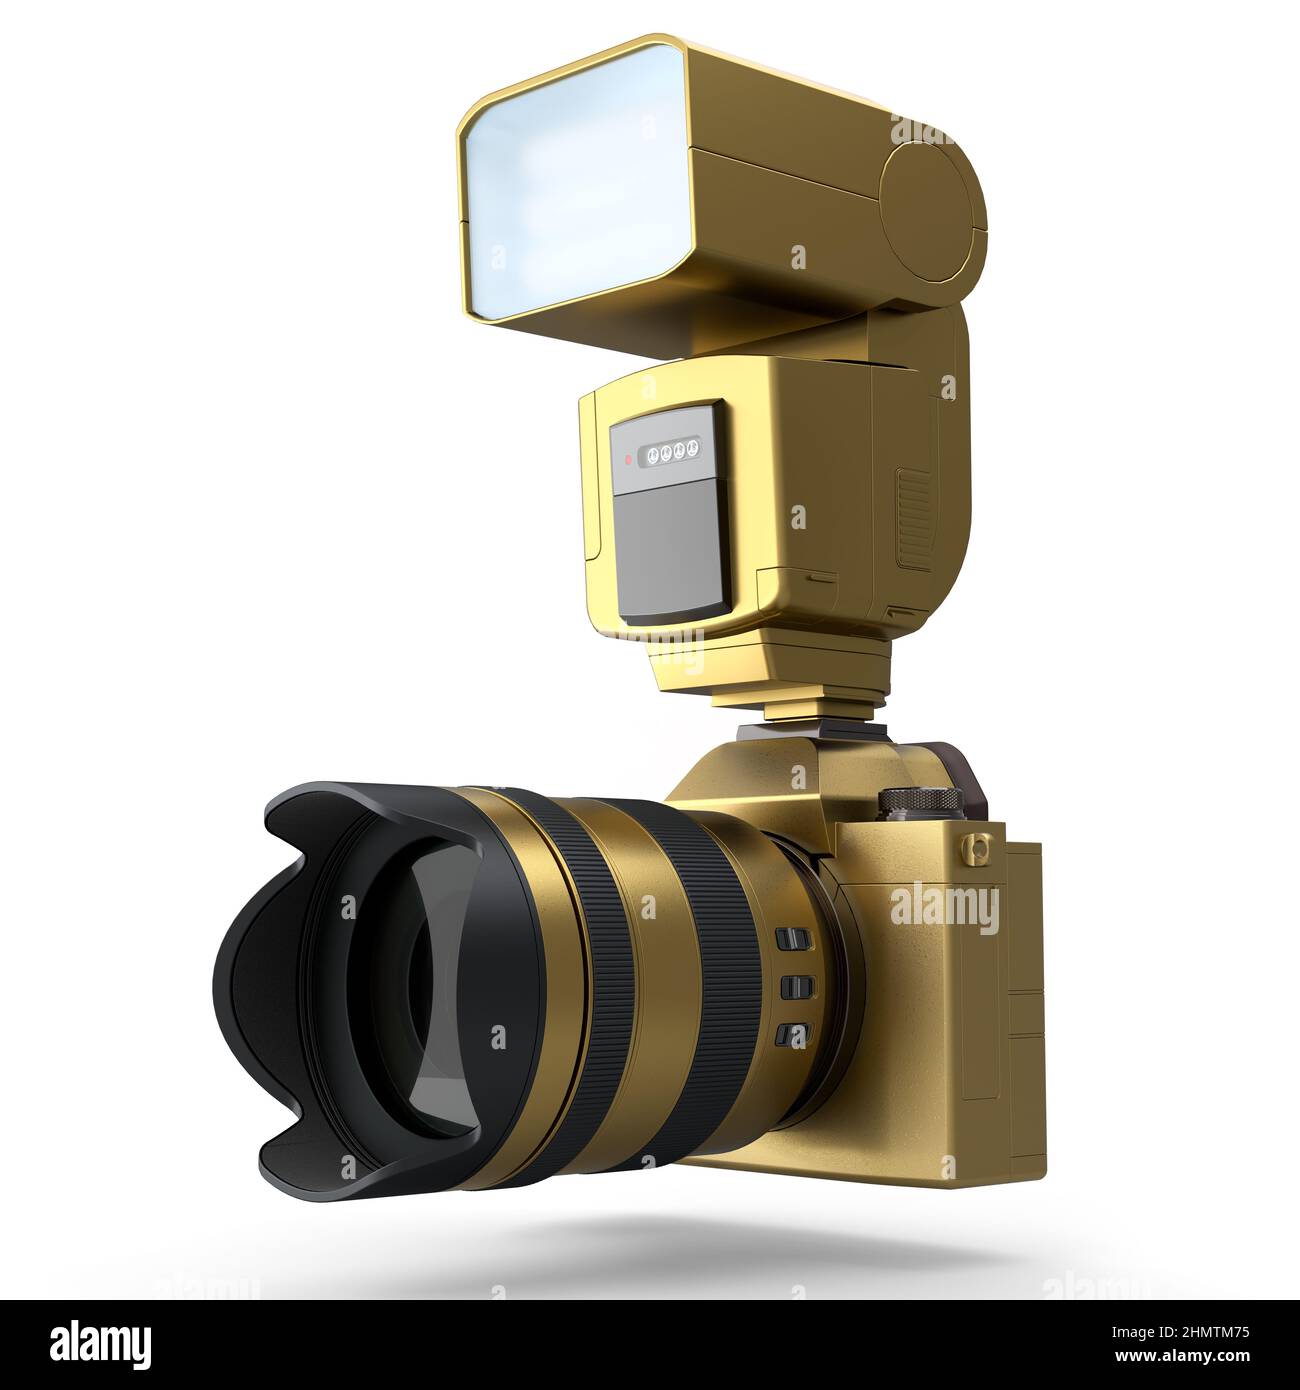 Konzept der Gold nicht existent DSLR-Kamera mit Objektiv und externen Blitz  Speedlight isoliert auf weißem Hintergrund. 3D Rendering professioneller  Fotografie Stockfotografie - Alamy